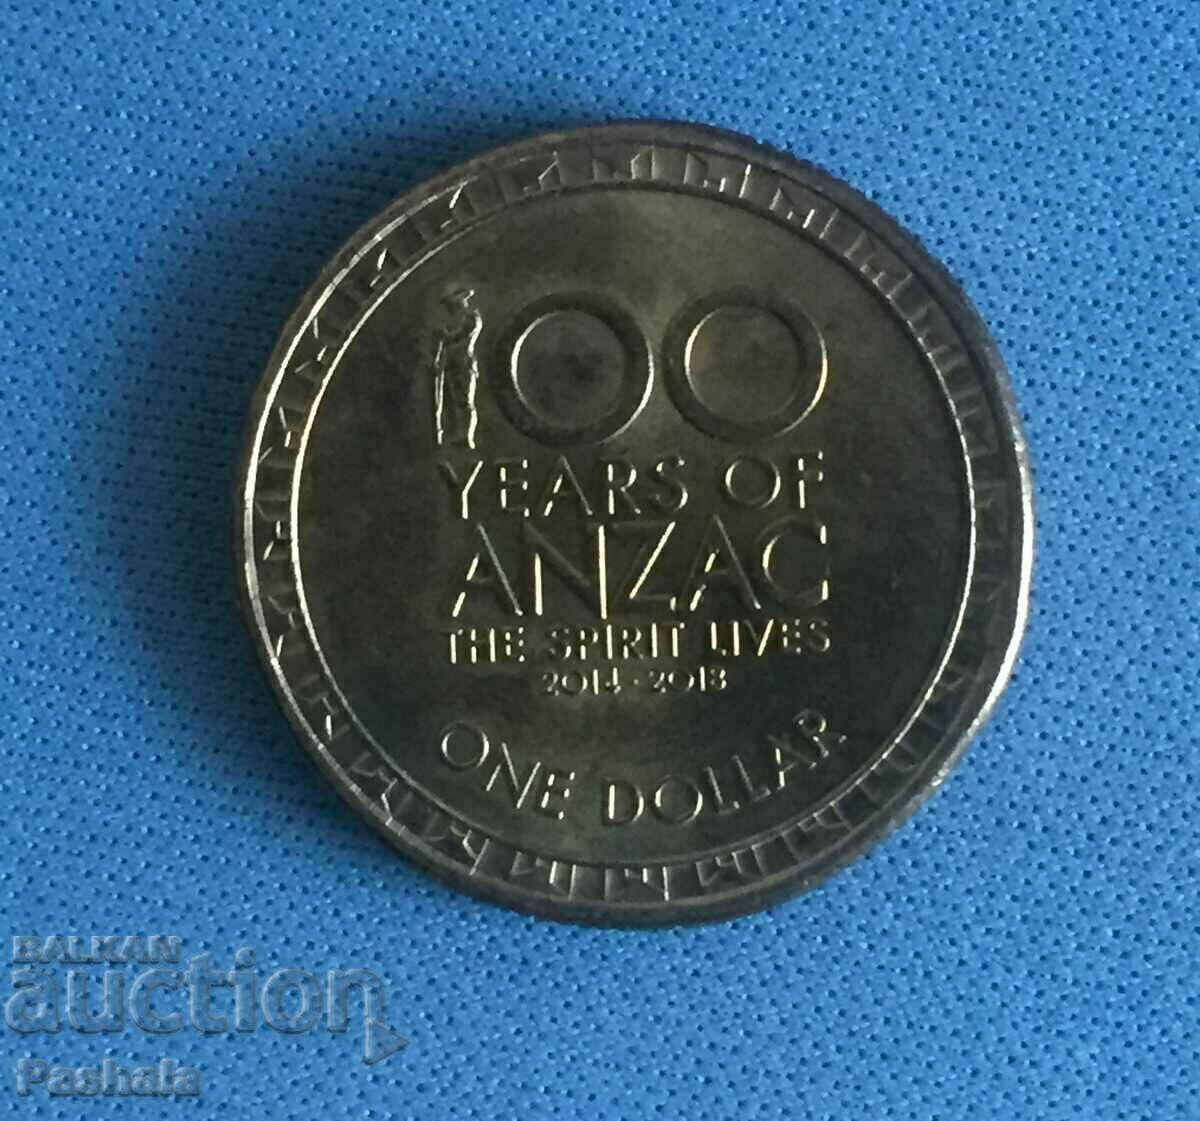 Australia $1 2014